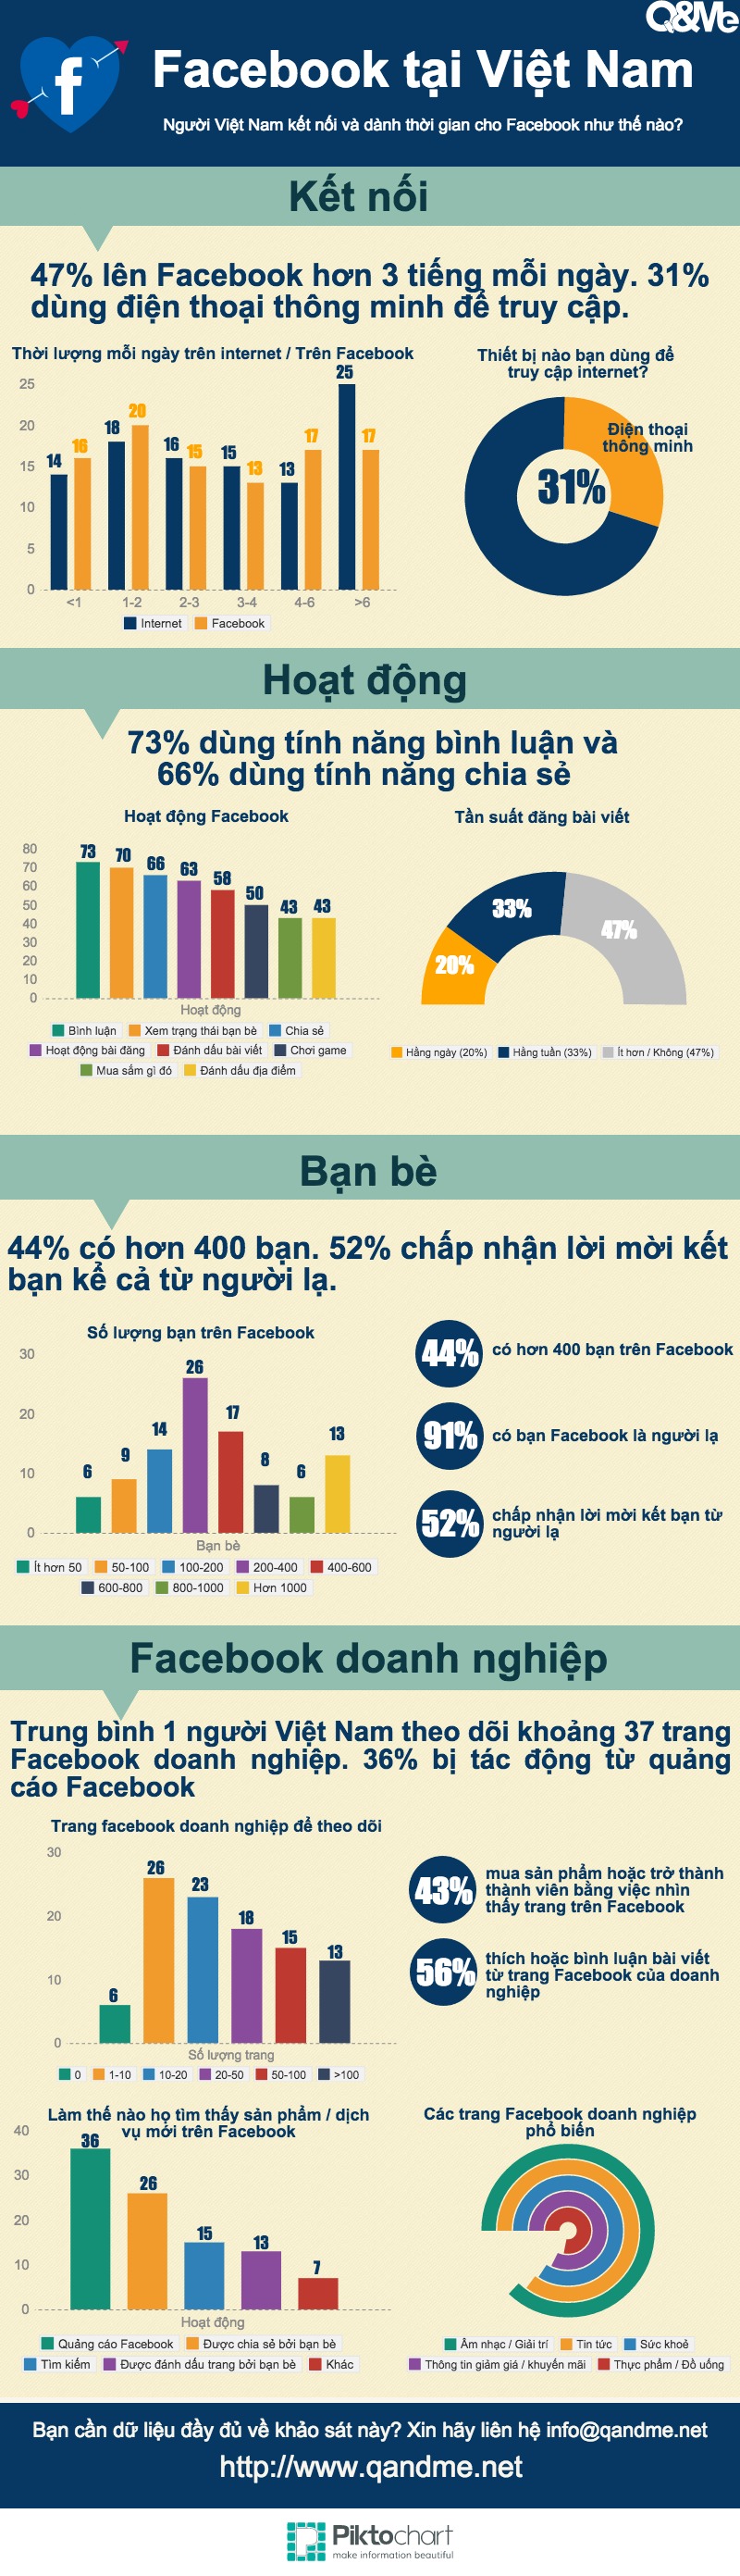 Xu hướng sử dụng Facebook tại Việt Nam